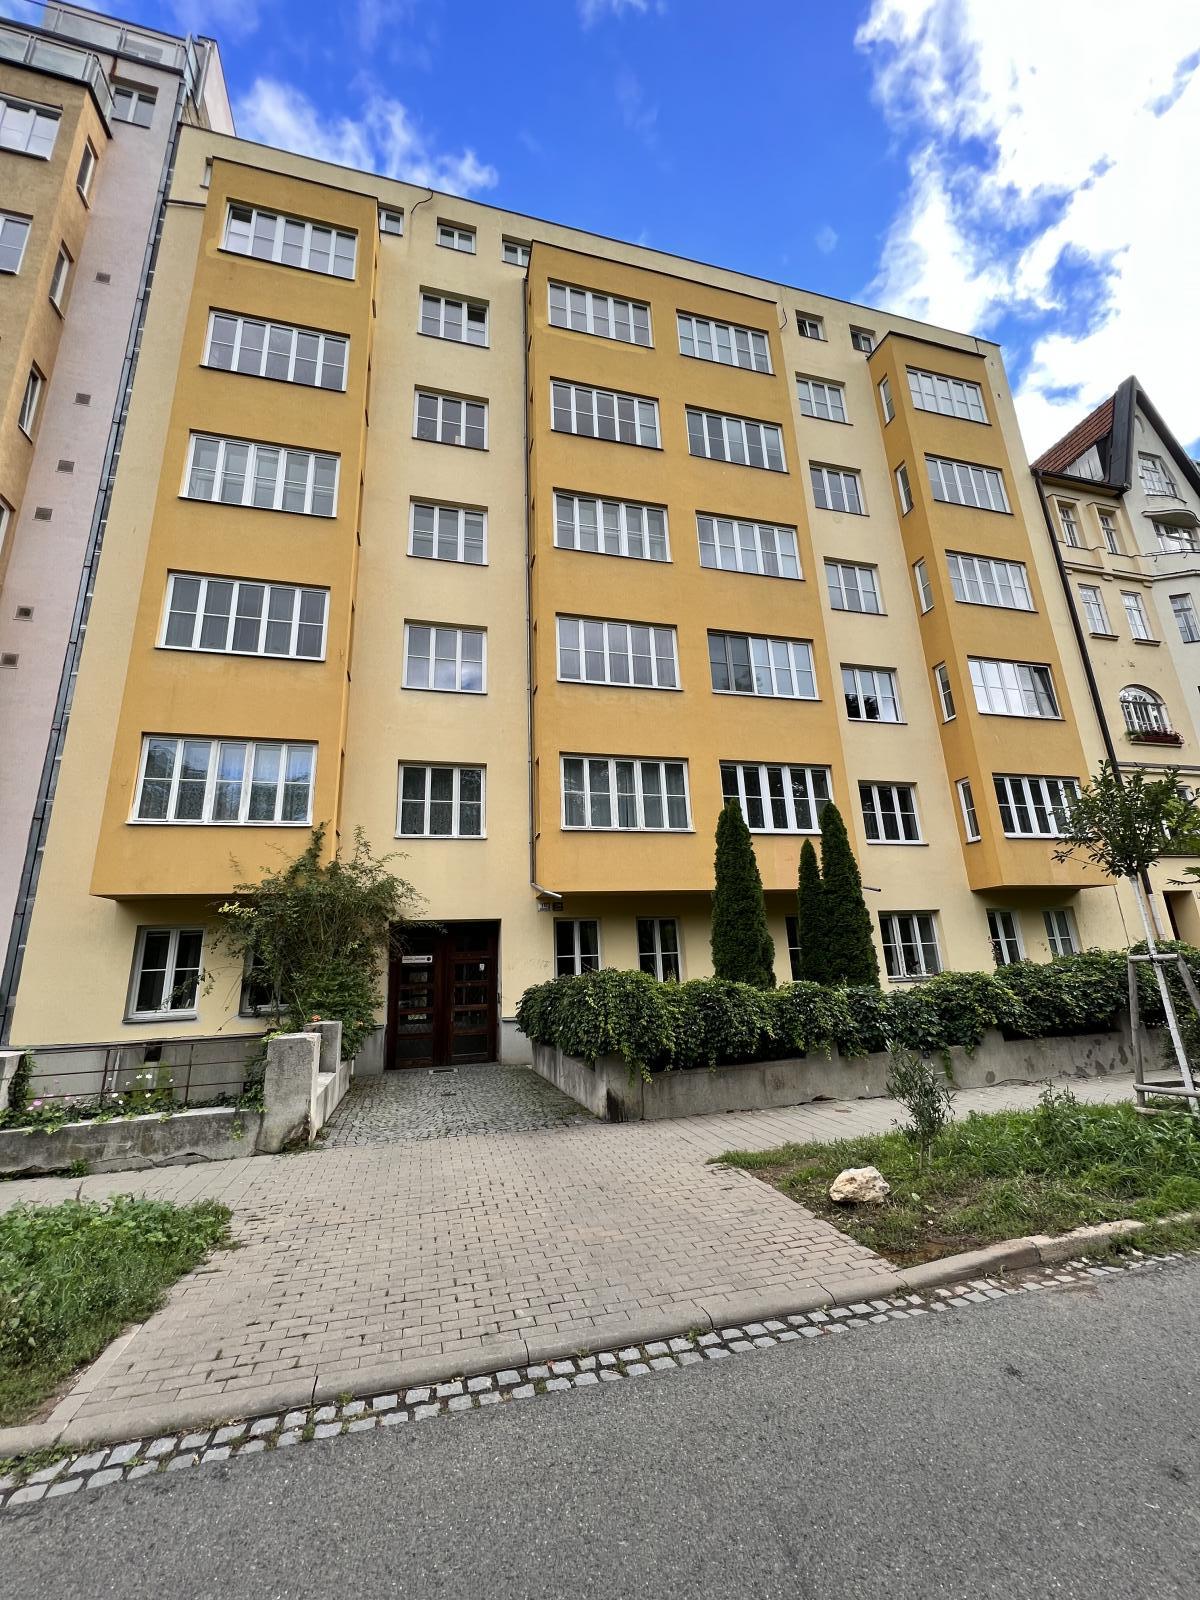 OV 3+kk Brno  Veveří, ul.Botanická,  CP 120,07 m2, k celkové rekonstrukci, vhodné na kanceláře